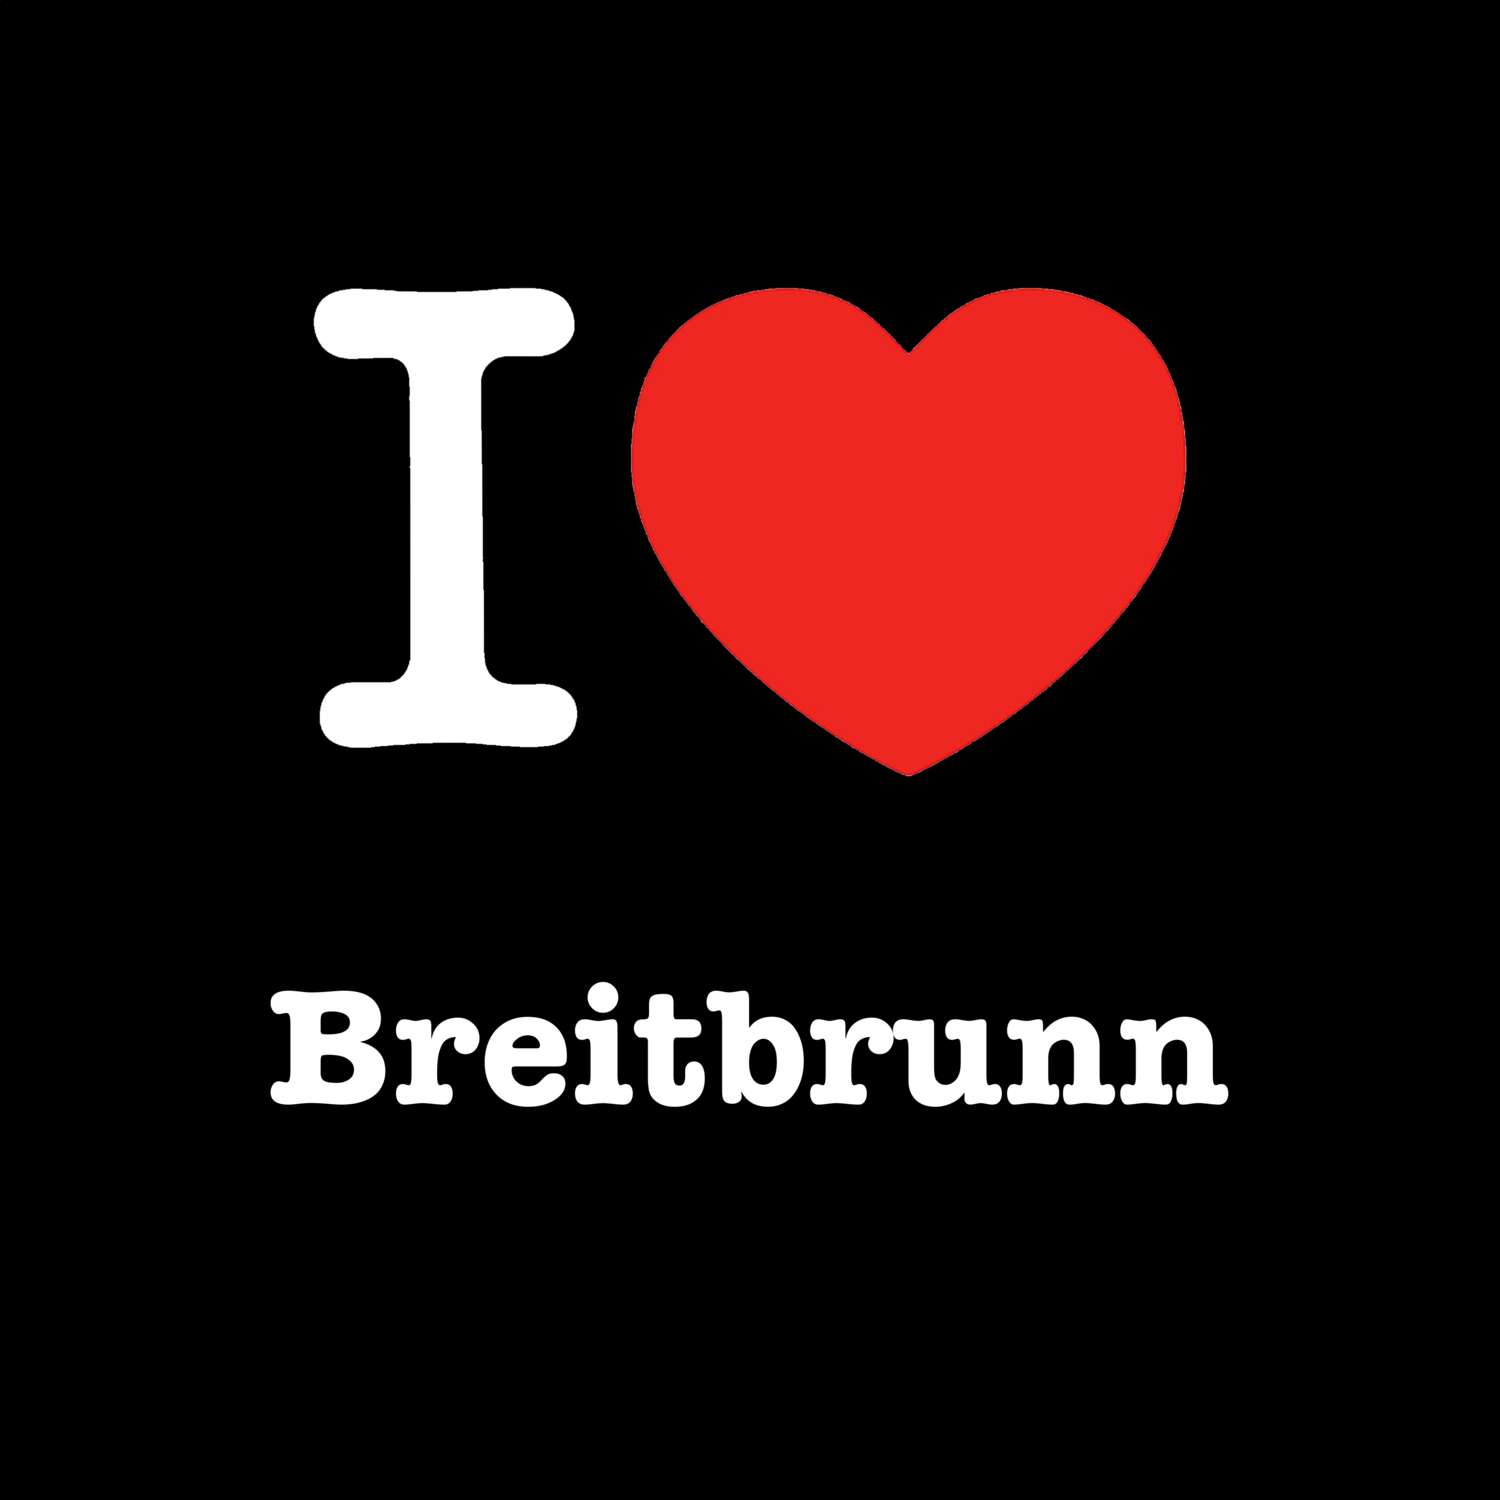 Breitbrunn T-Shirt »I love«